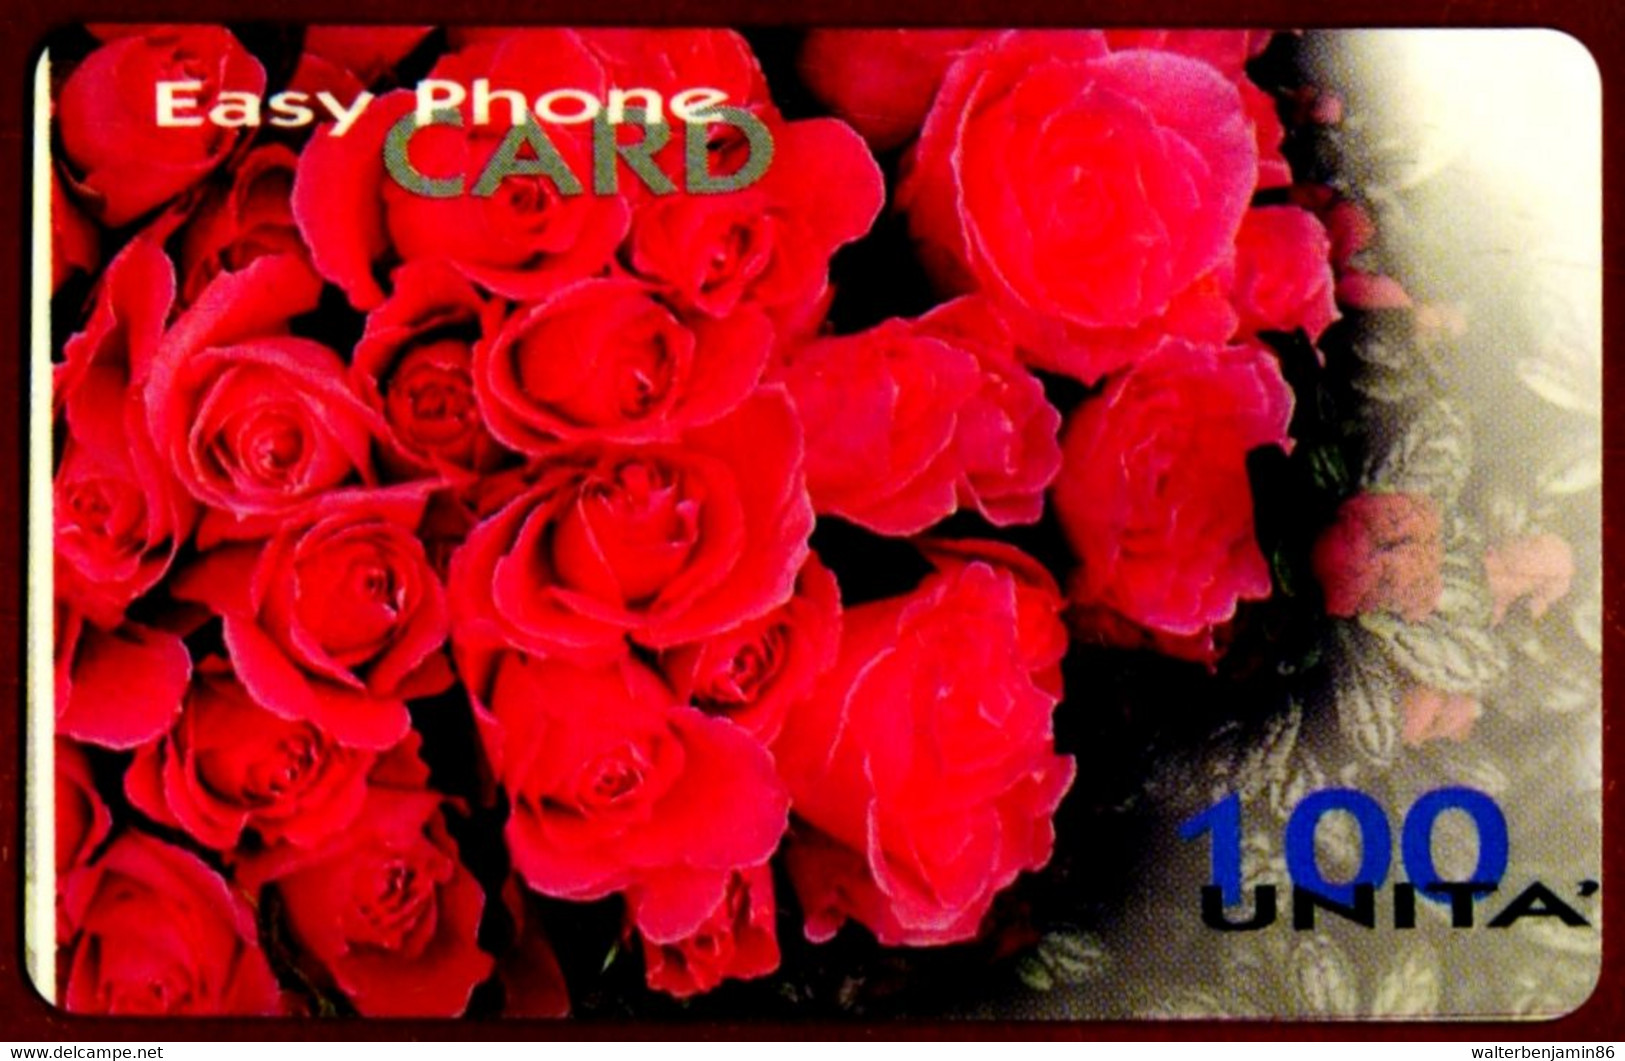 SCHEDA TELEFONICA PROTOTIPO EASY PHONE CARD (VALORE COLORE BLU) DIFETTO STAMPA - Tests & Servizi